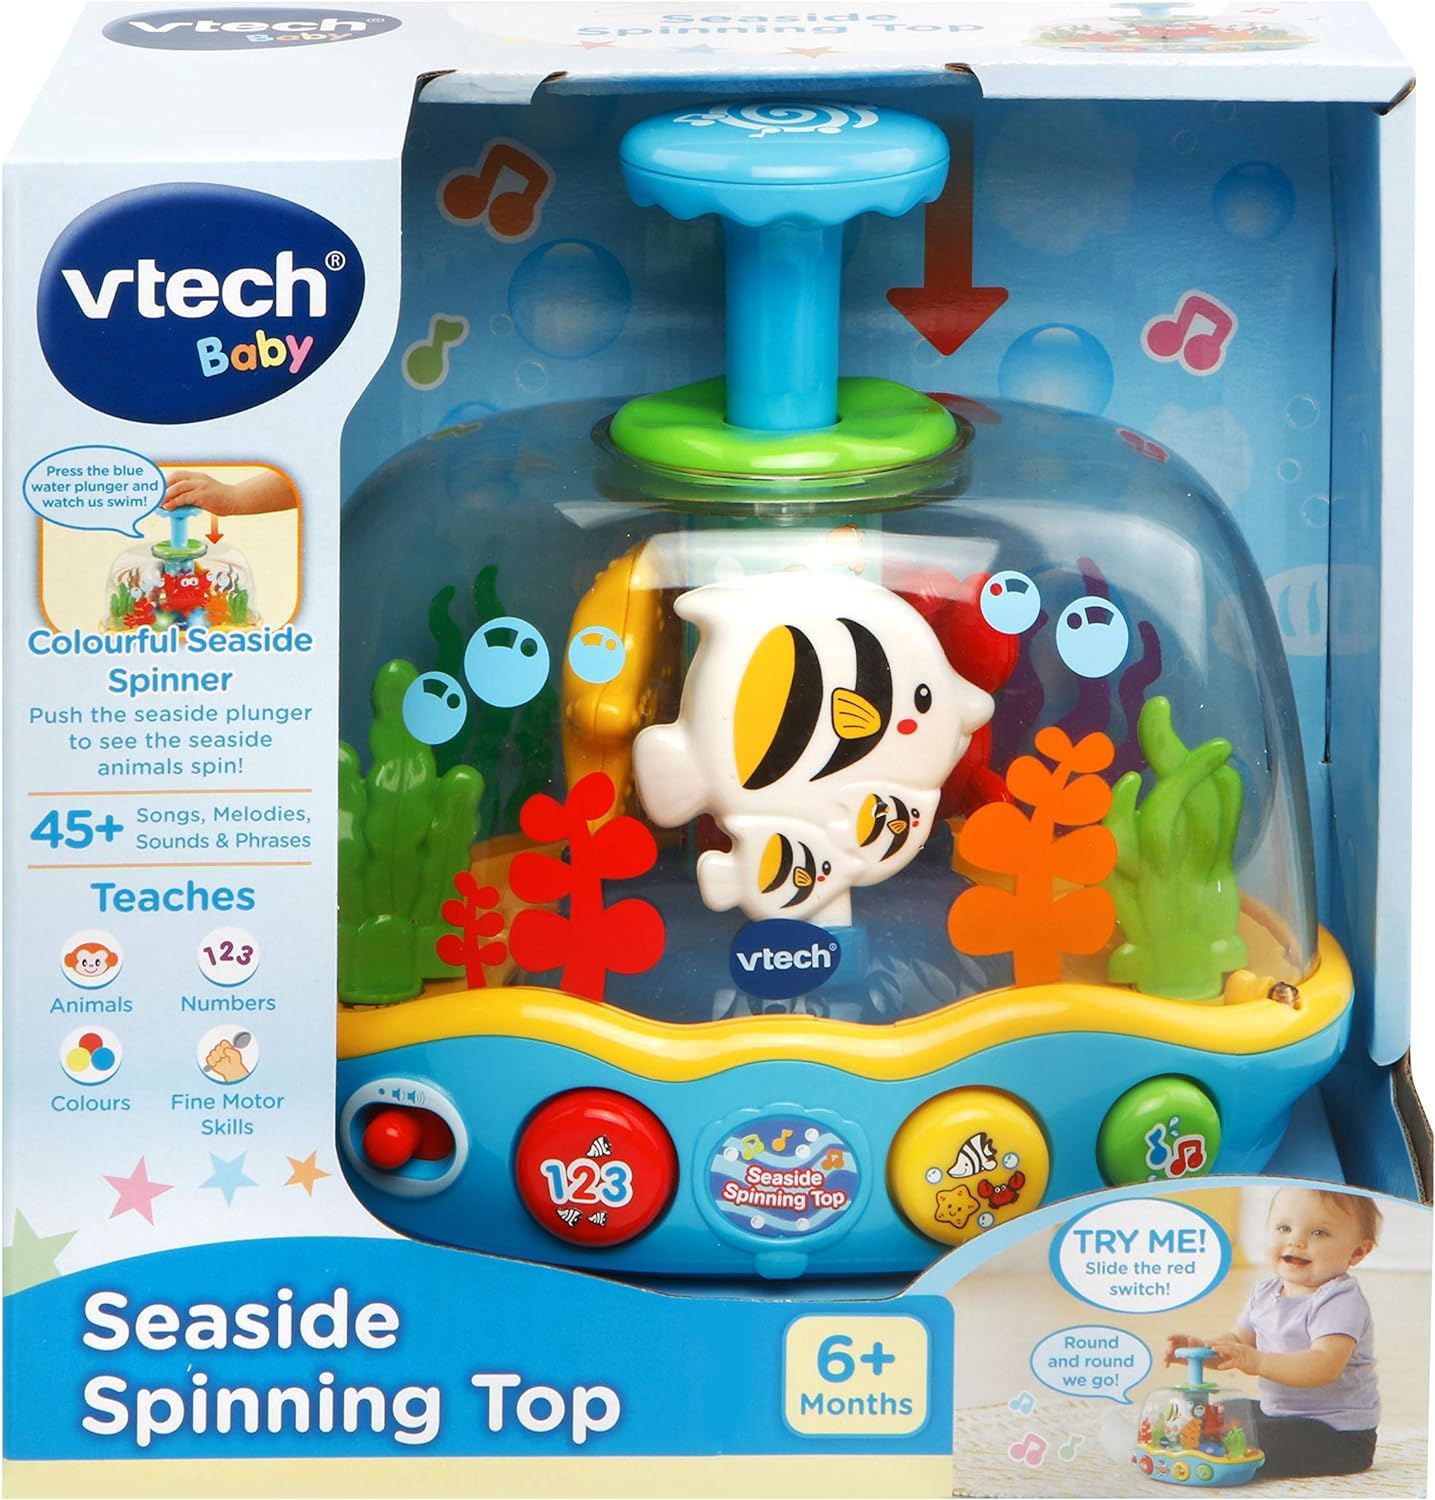 VTech Pião à beira-mar, brinquedo sensorial para bebês com música, luzes e cores, brinquedo interativo para bebês para brincadeiras sensoriais, brinquedo educativo com números e animais marinhos, brinquedo de aprendizagem para bebês de 6 meses +